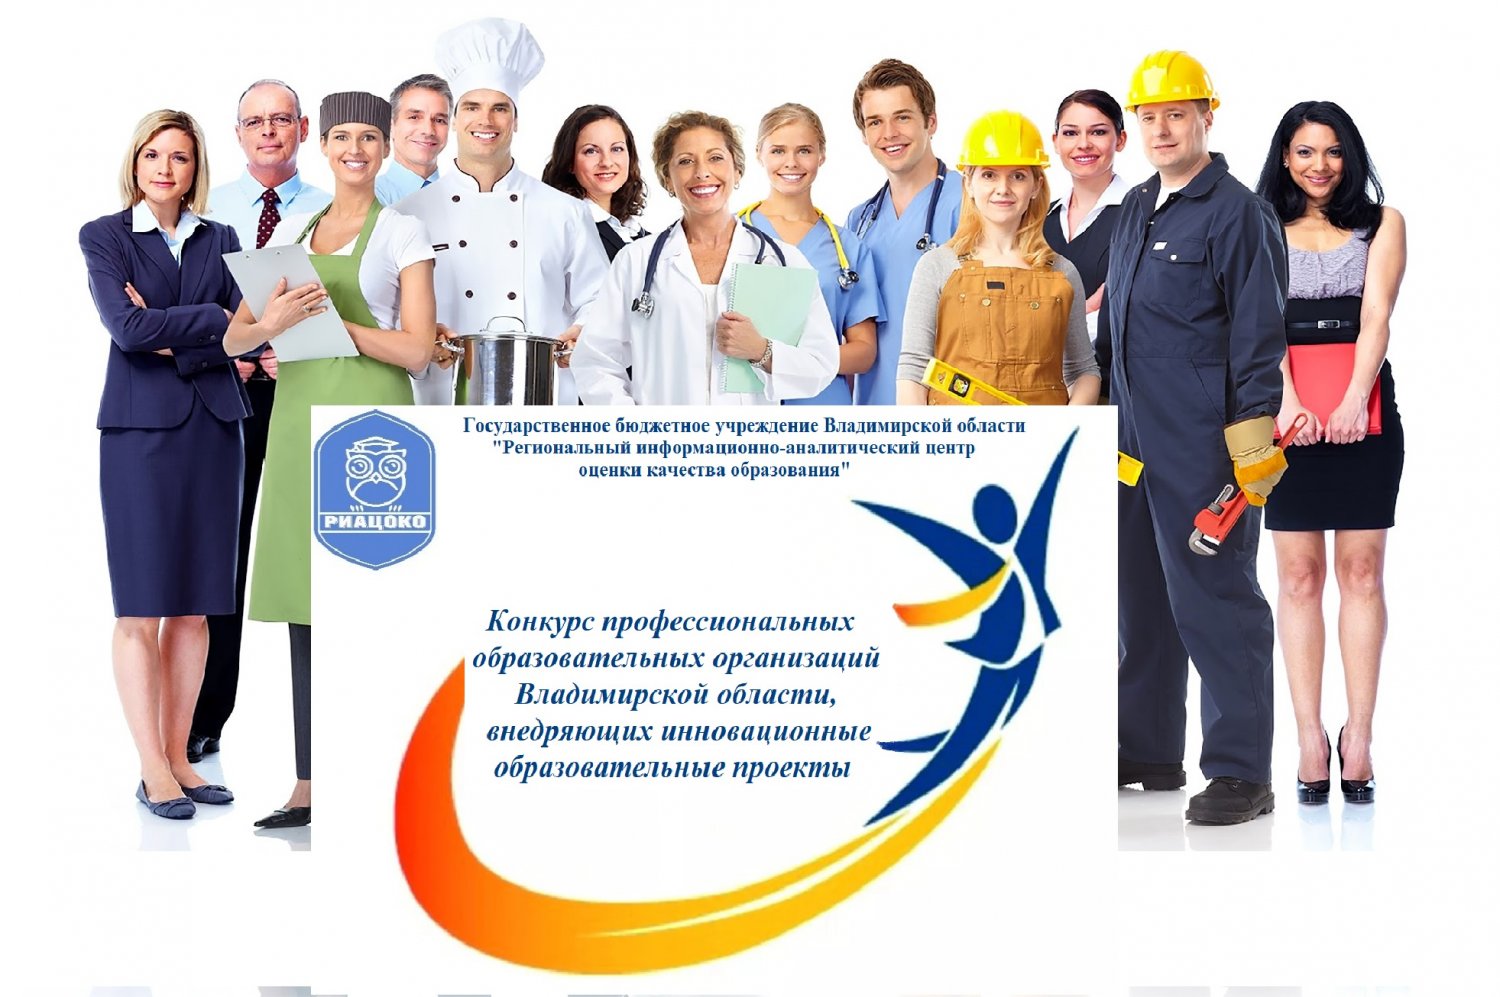 Начинается конкурс профессиональных образовательных организаций Владимирской области, внедряющих инновационные образовательные проекты